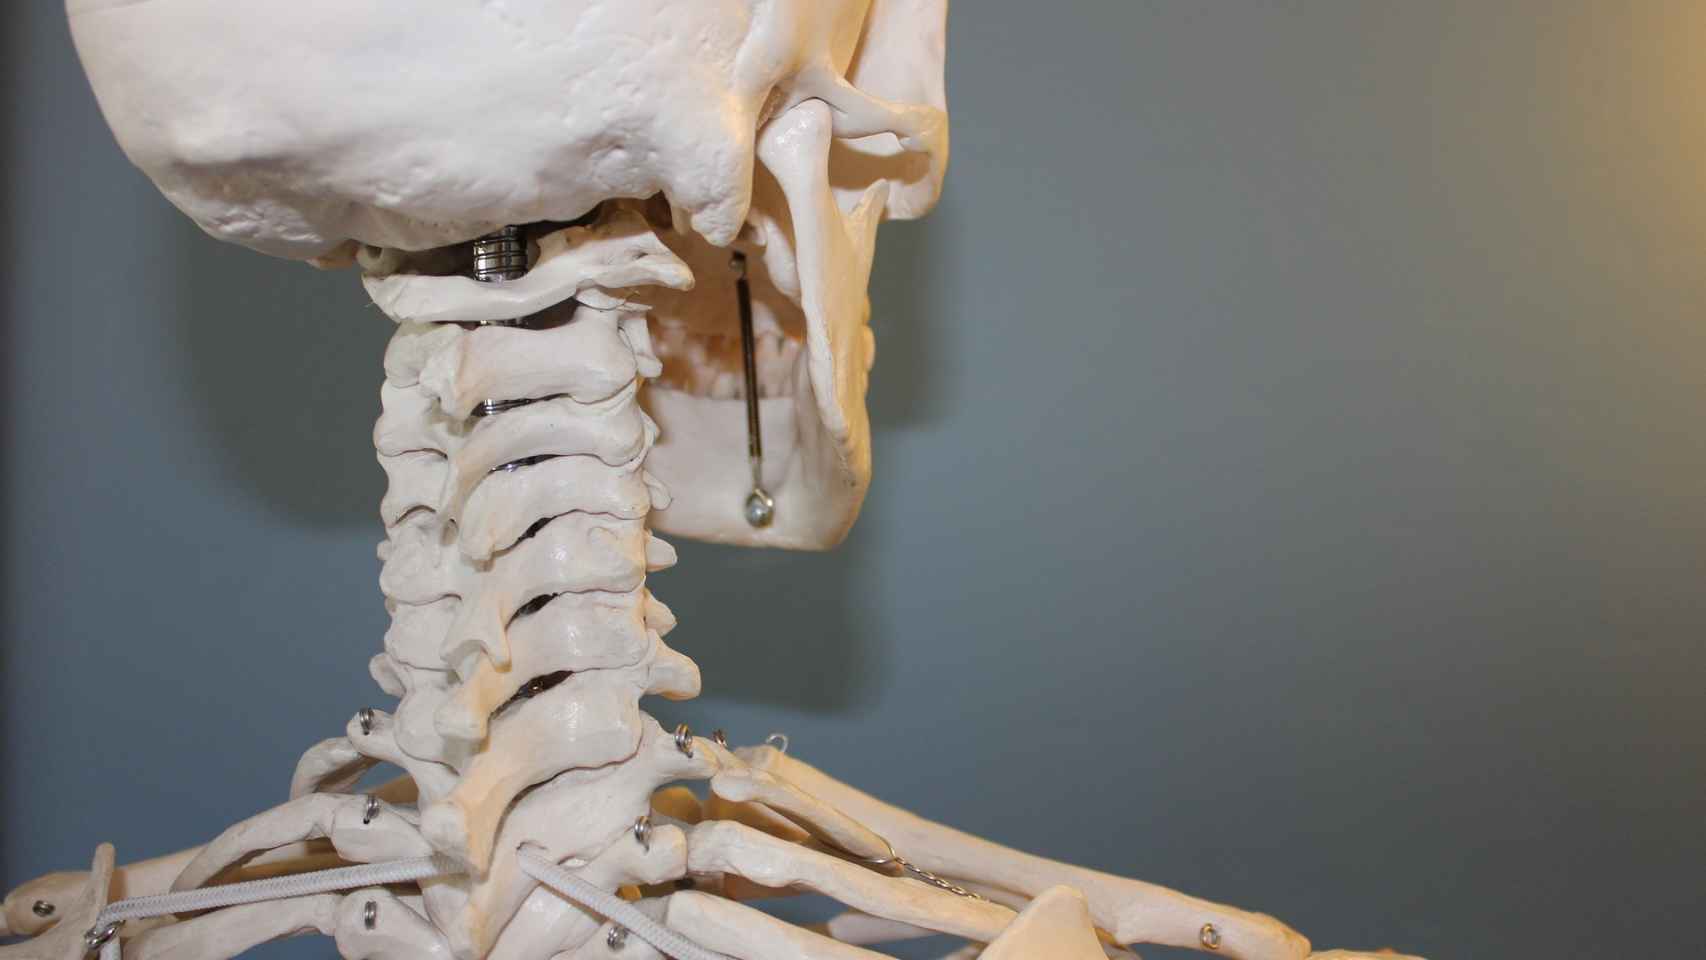 Huesos del cuerpo humano: ¿Cuál es el más largo y el más corto?